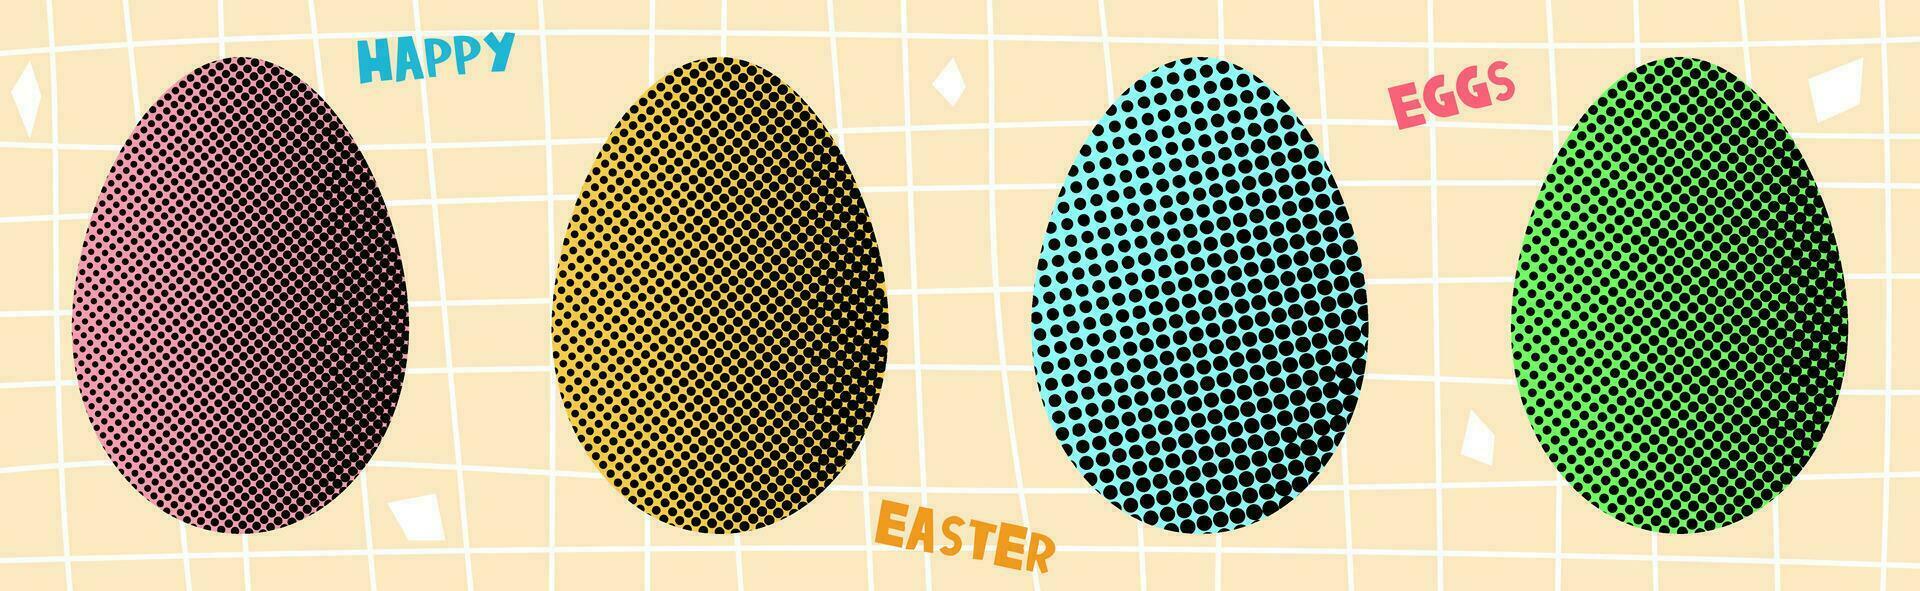 einstellen von Ostern Eier gemacht mit Halbton Design. bunt Ostern Eier. vektor